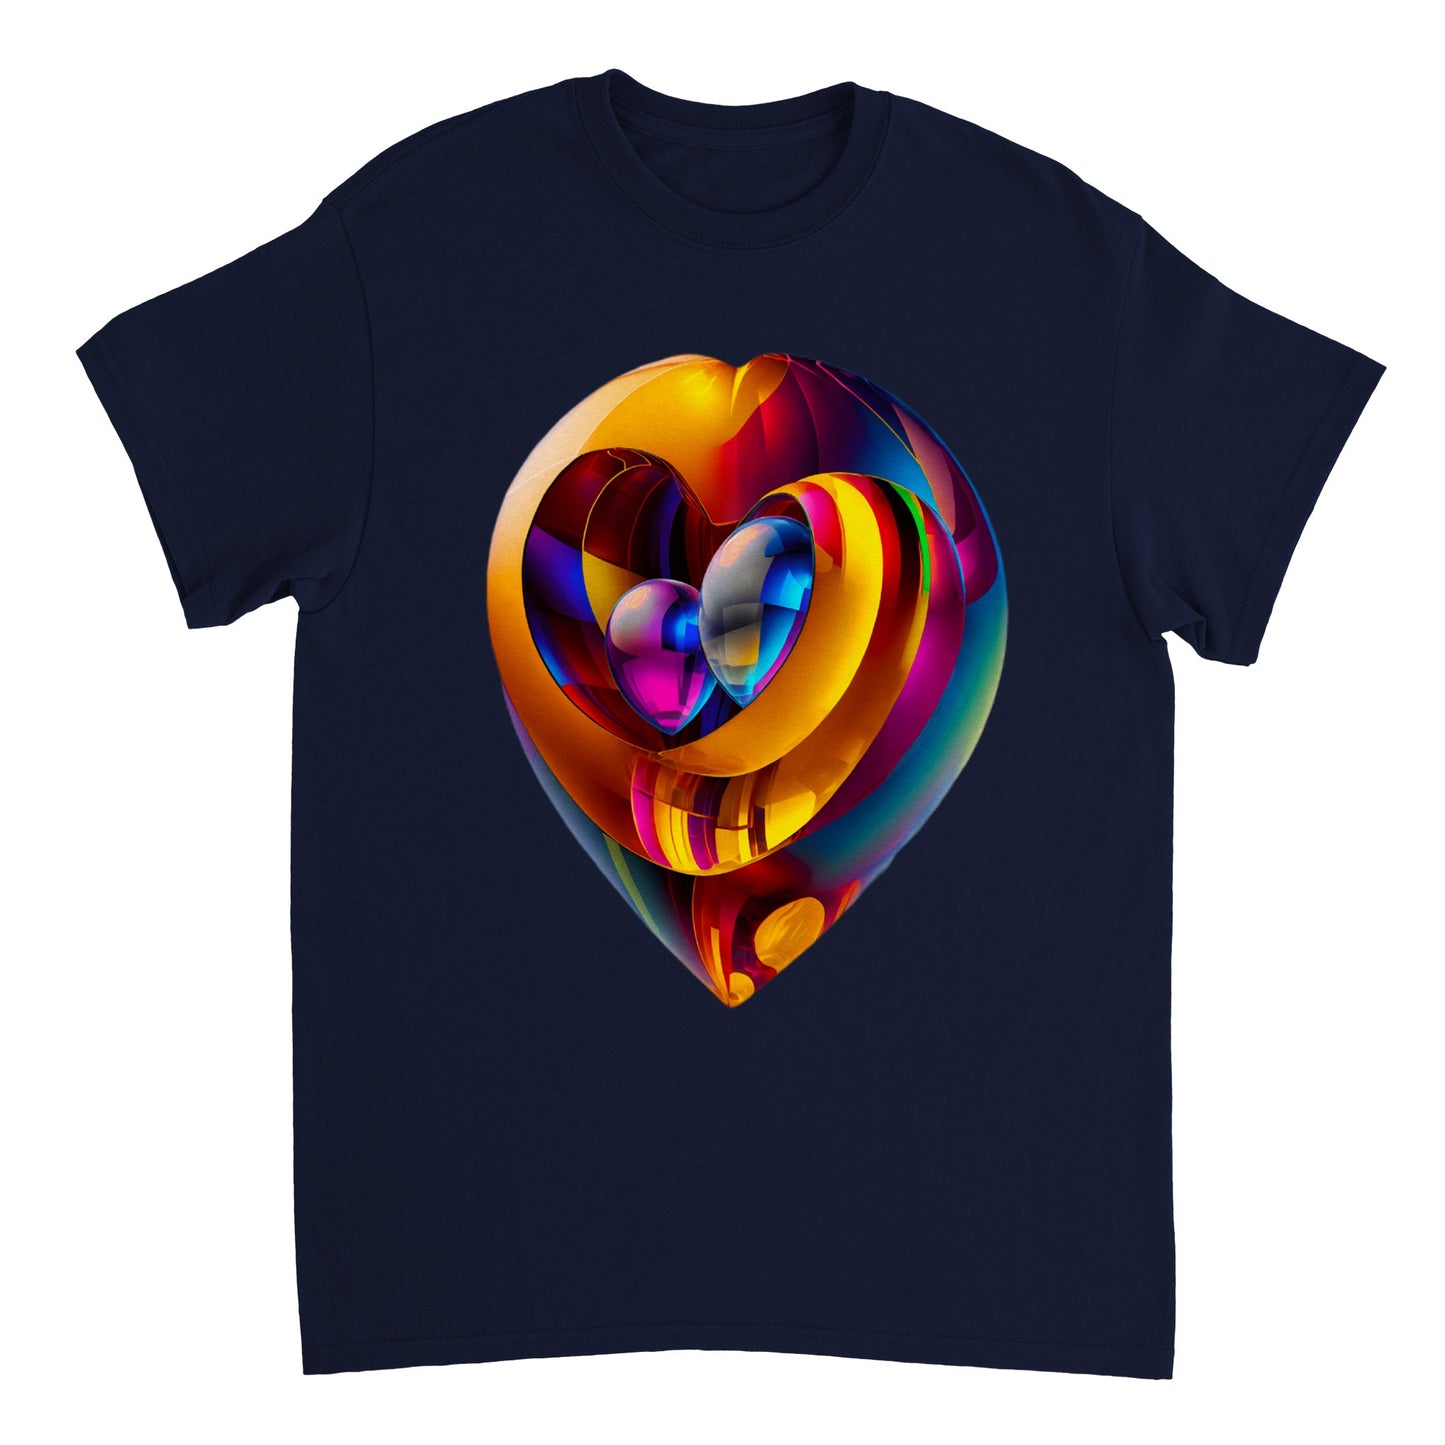 Love Heart - Heavyweight Unisex Crewneck T-shirt 45